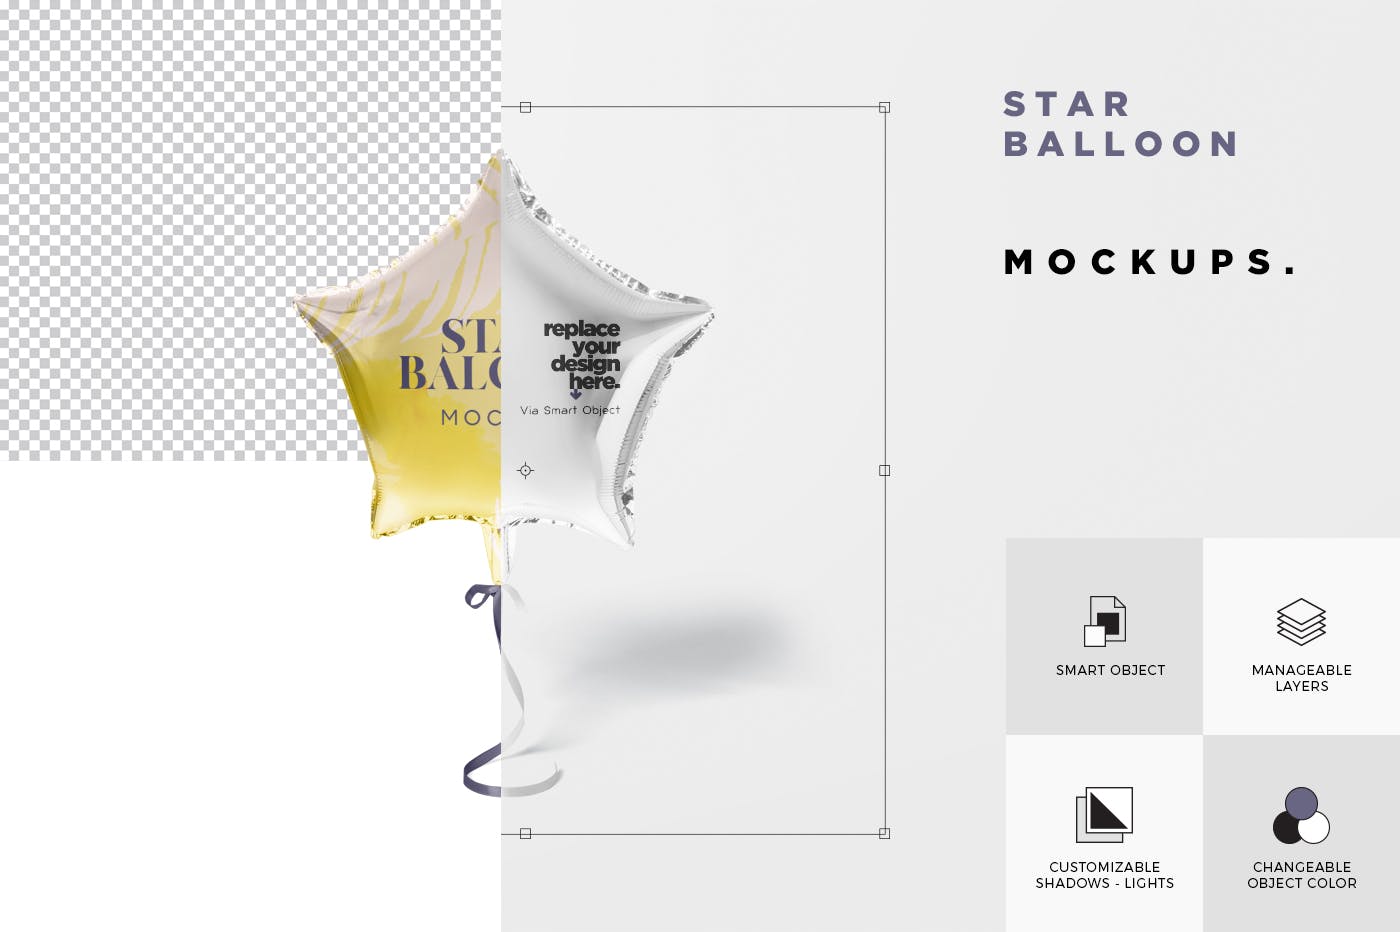 气球星星装饰物图案设计样机蚂蚁素材精选模板 Star Balloon Mockup插图(5)